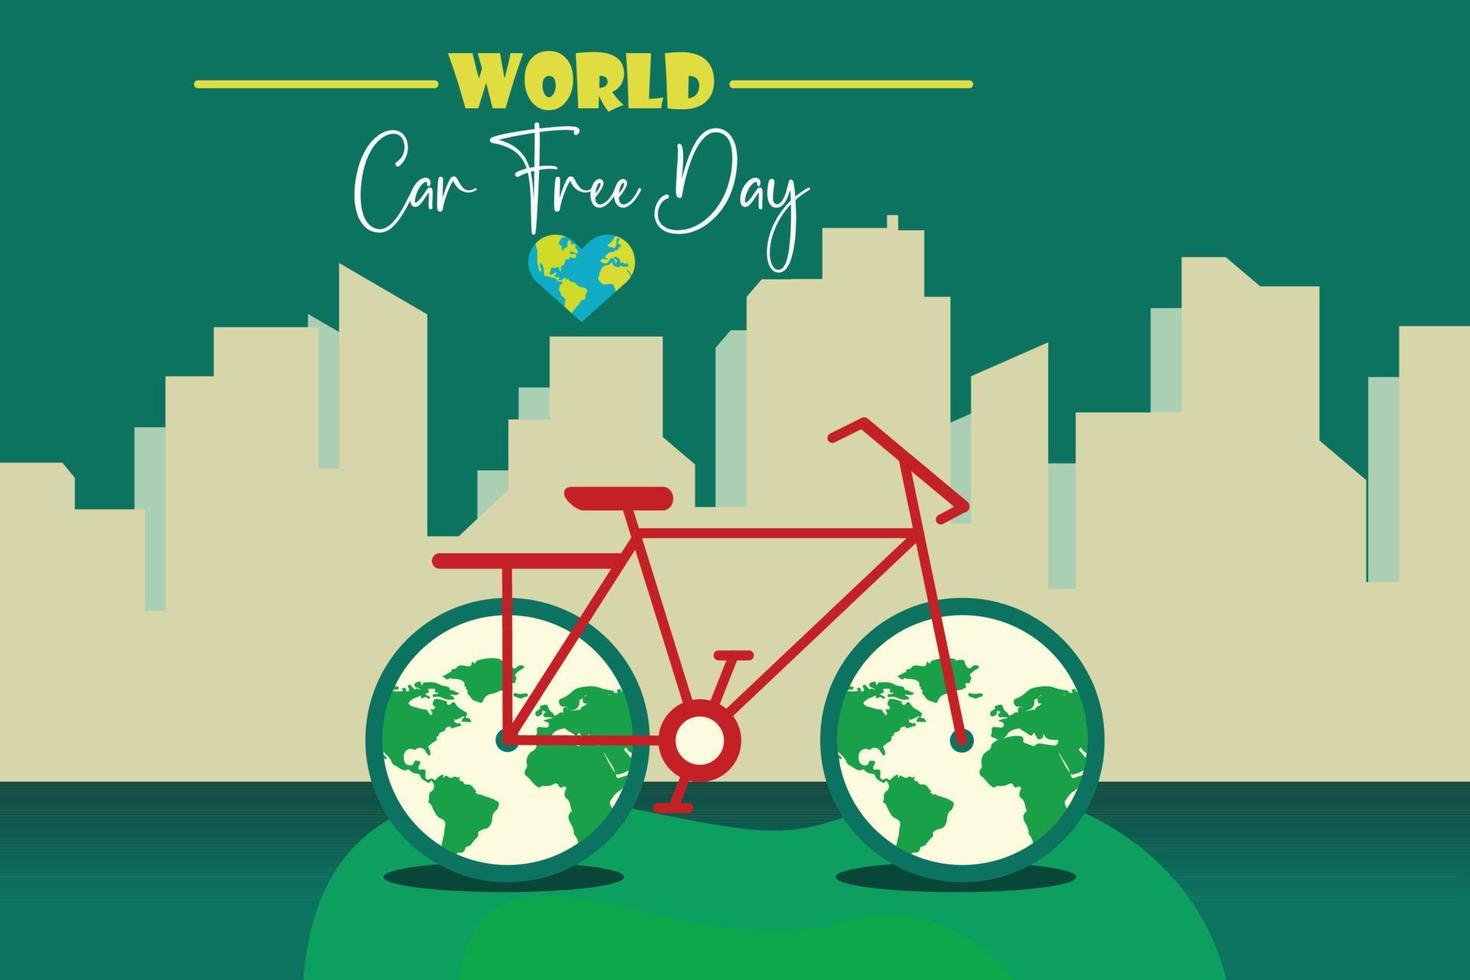 wereld autovrije dag op 22 september aankondigingsbericht met krijttekening fiets en wereldfietswielen op groene schoolbordachtergrond. vector